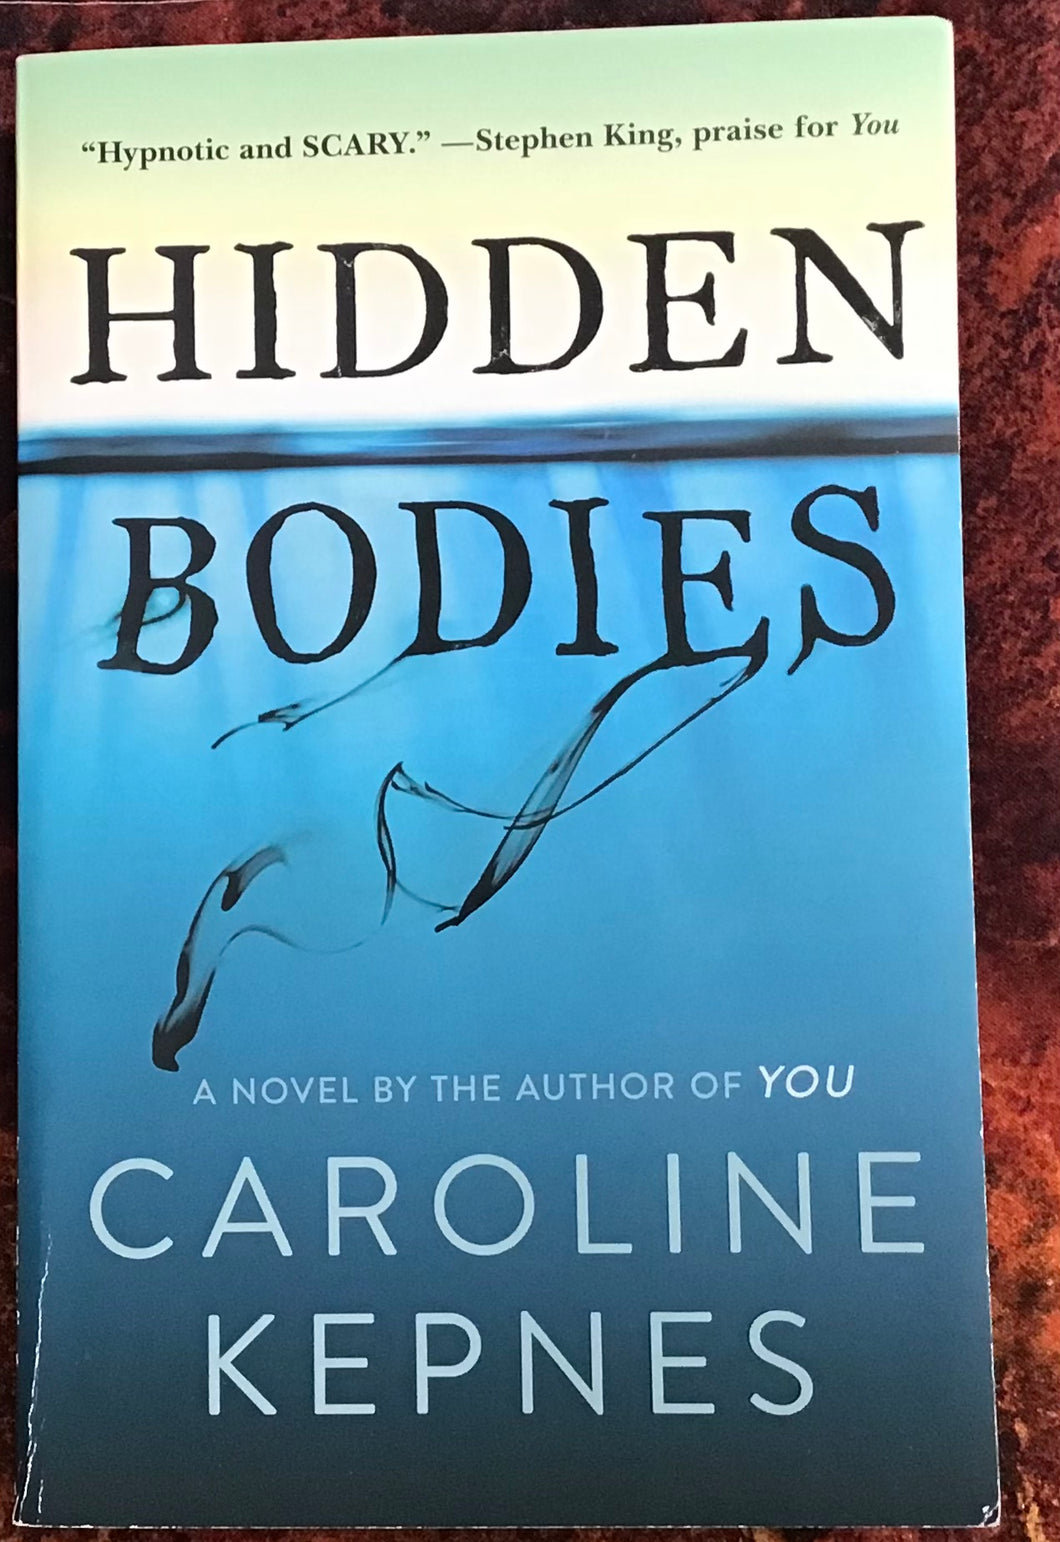 Hidden Bodies, by Caroline Kepnes